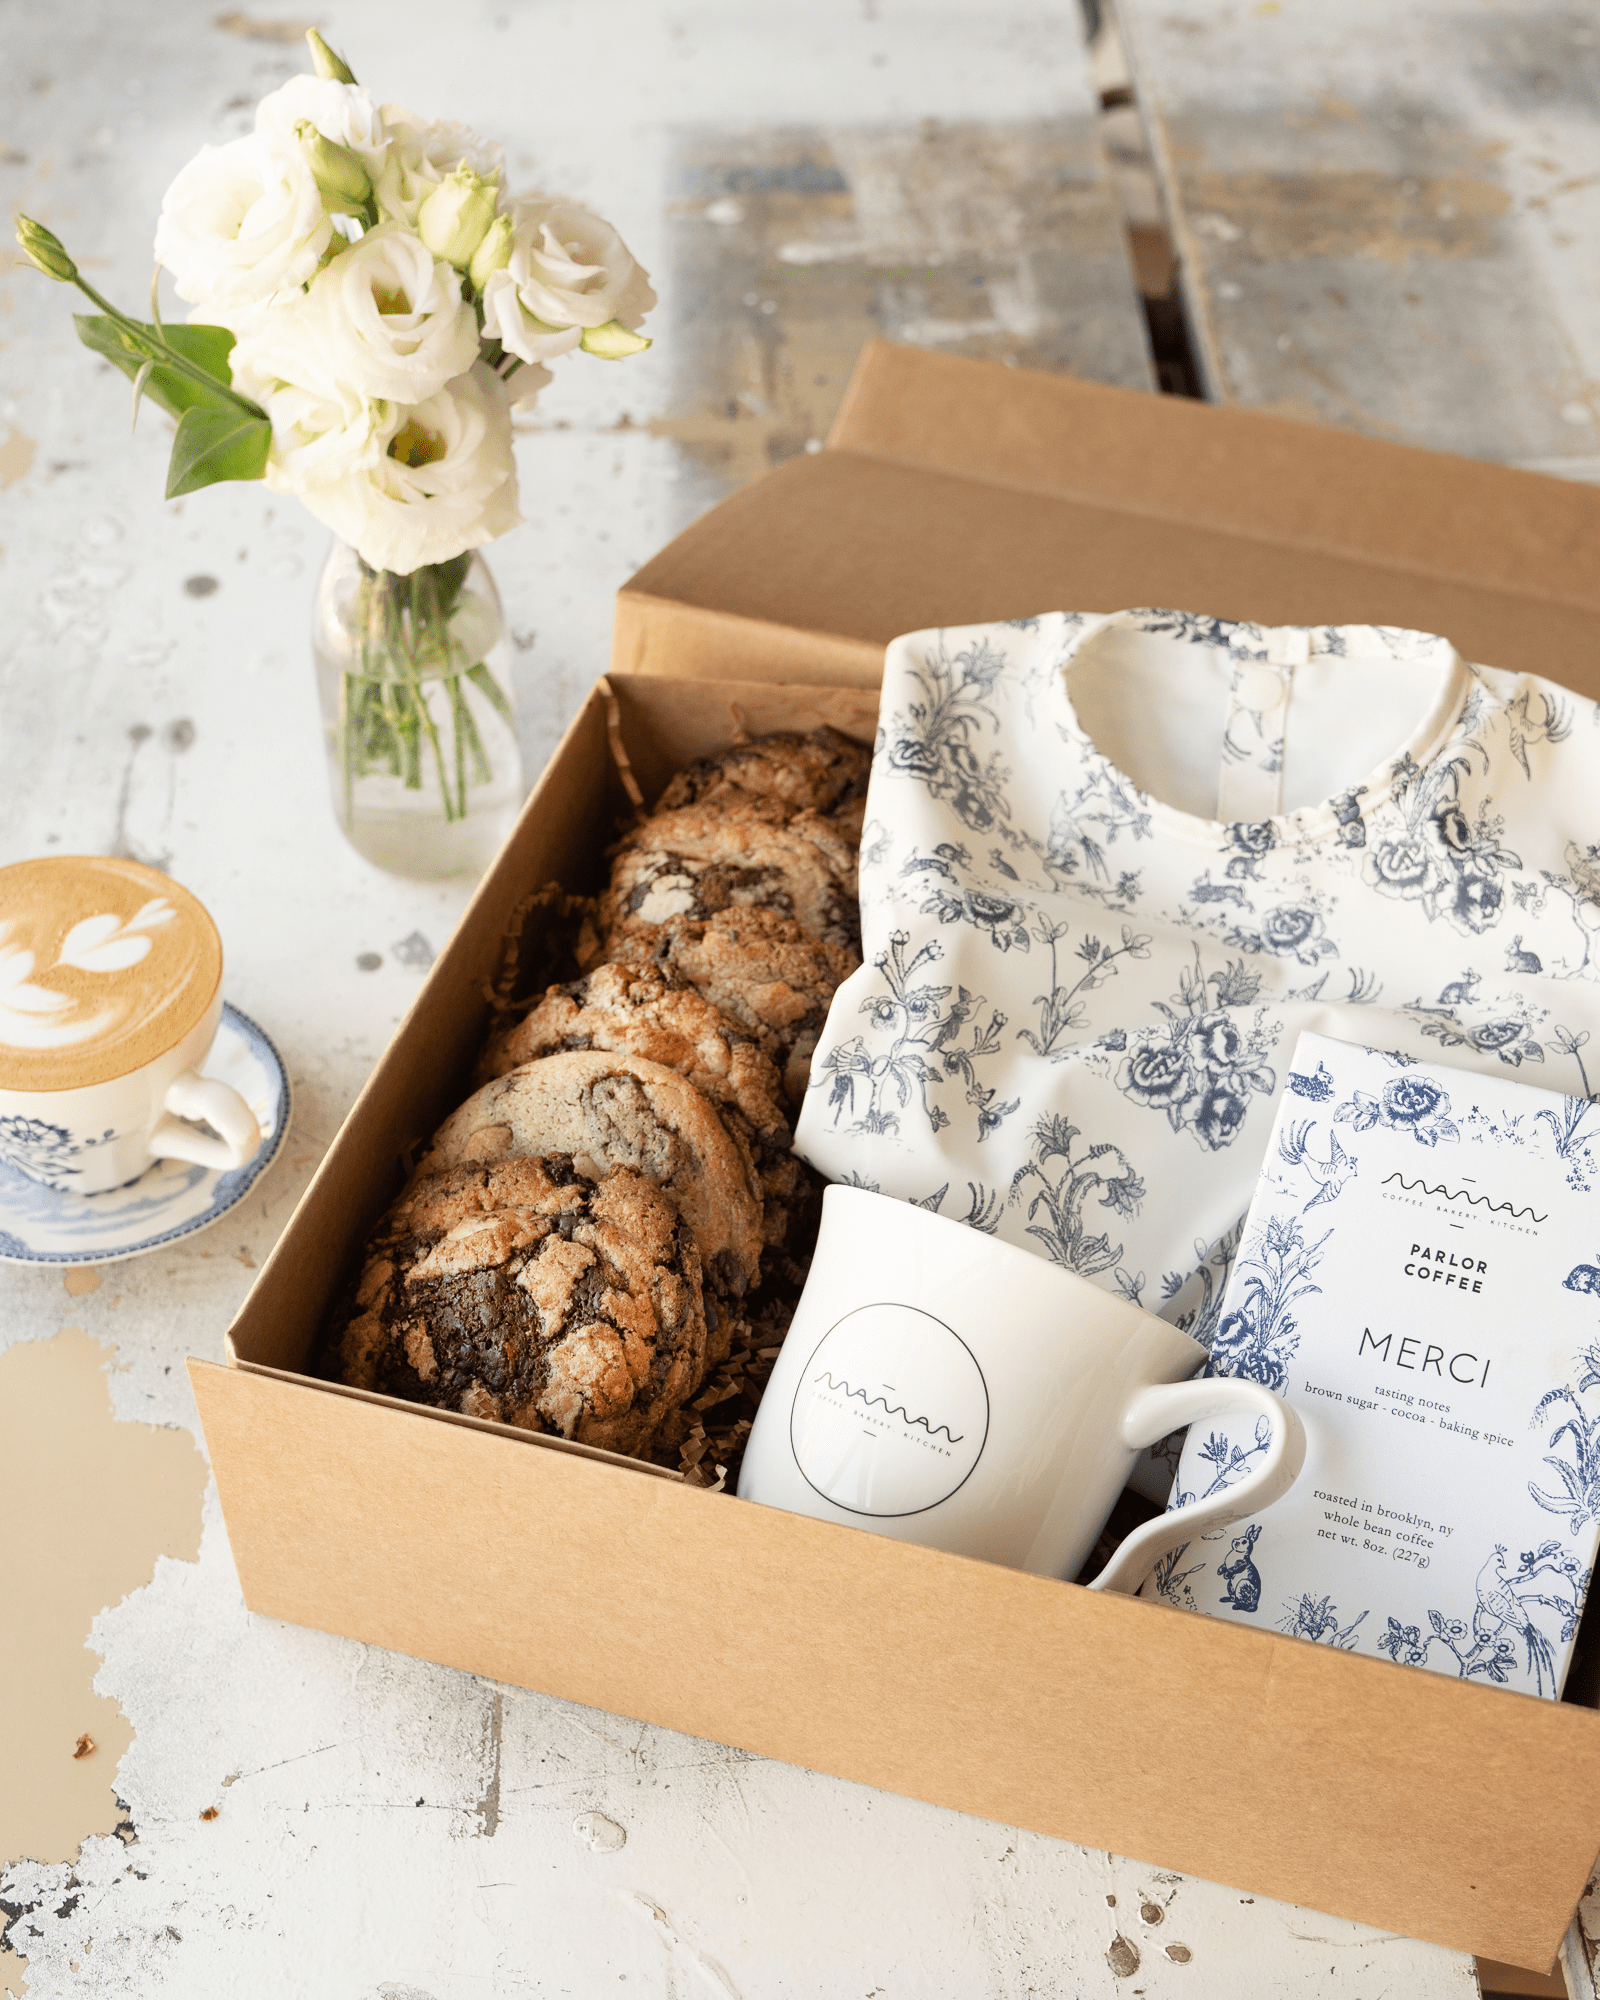 maman gift box with cookies and mug